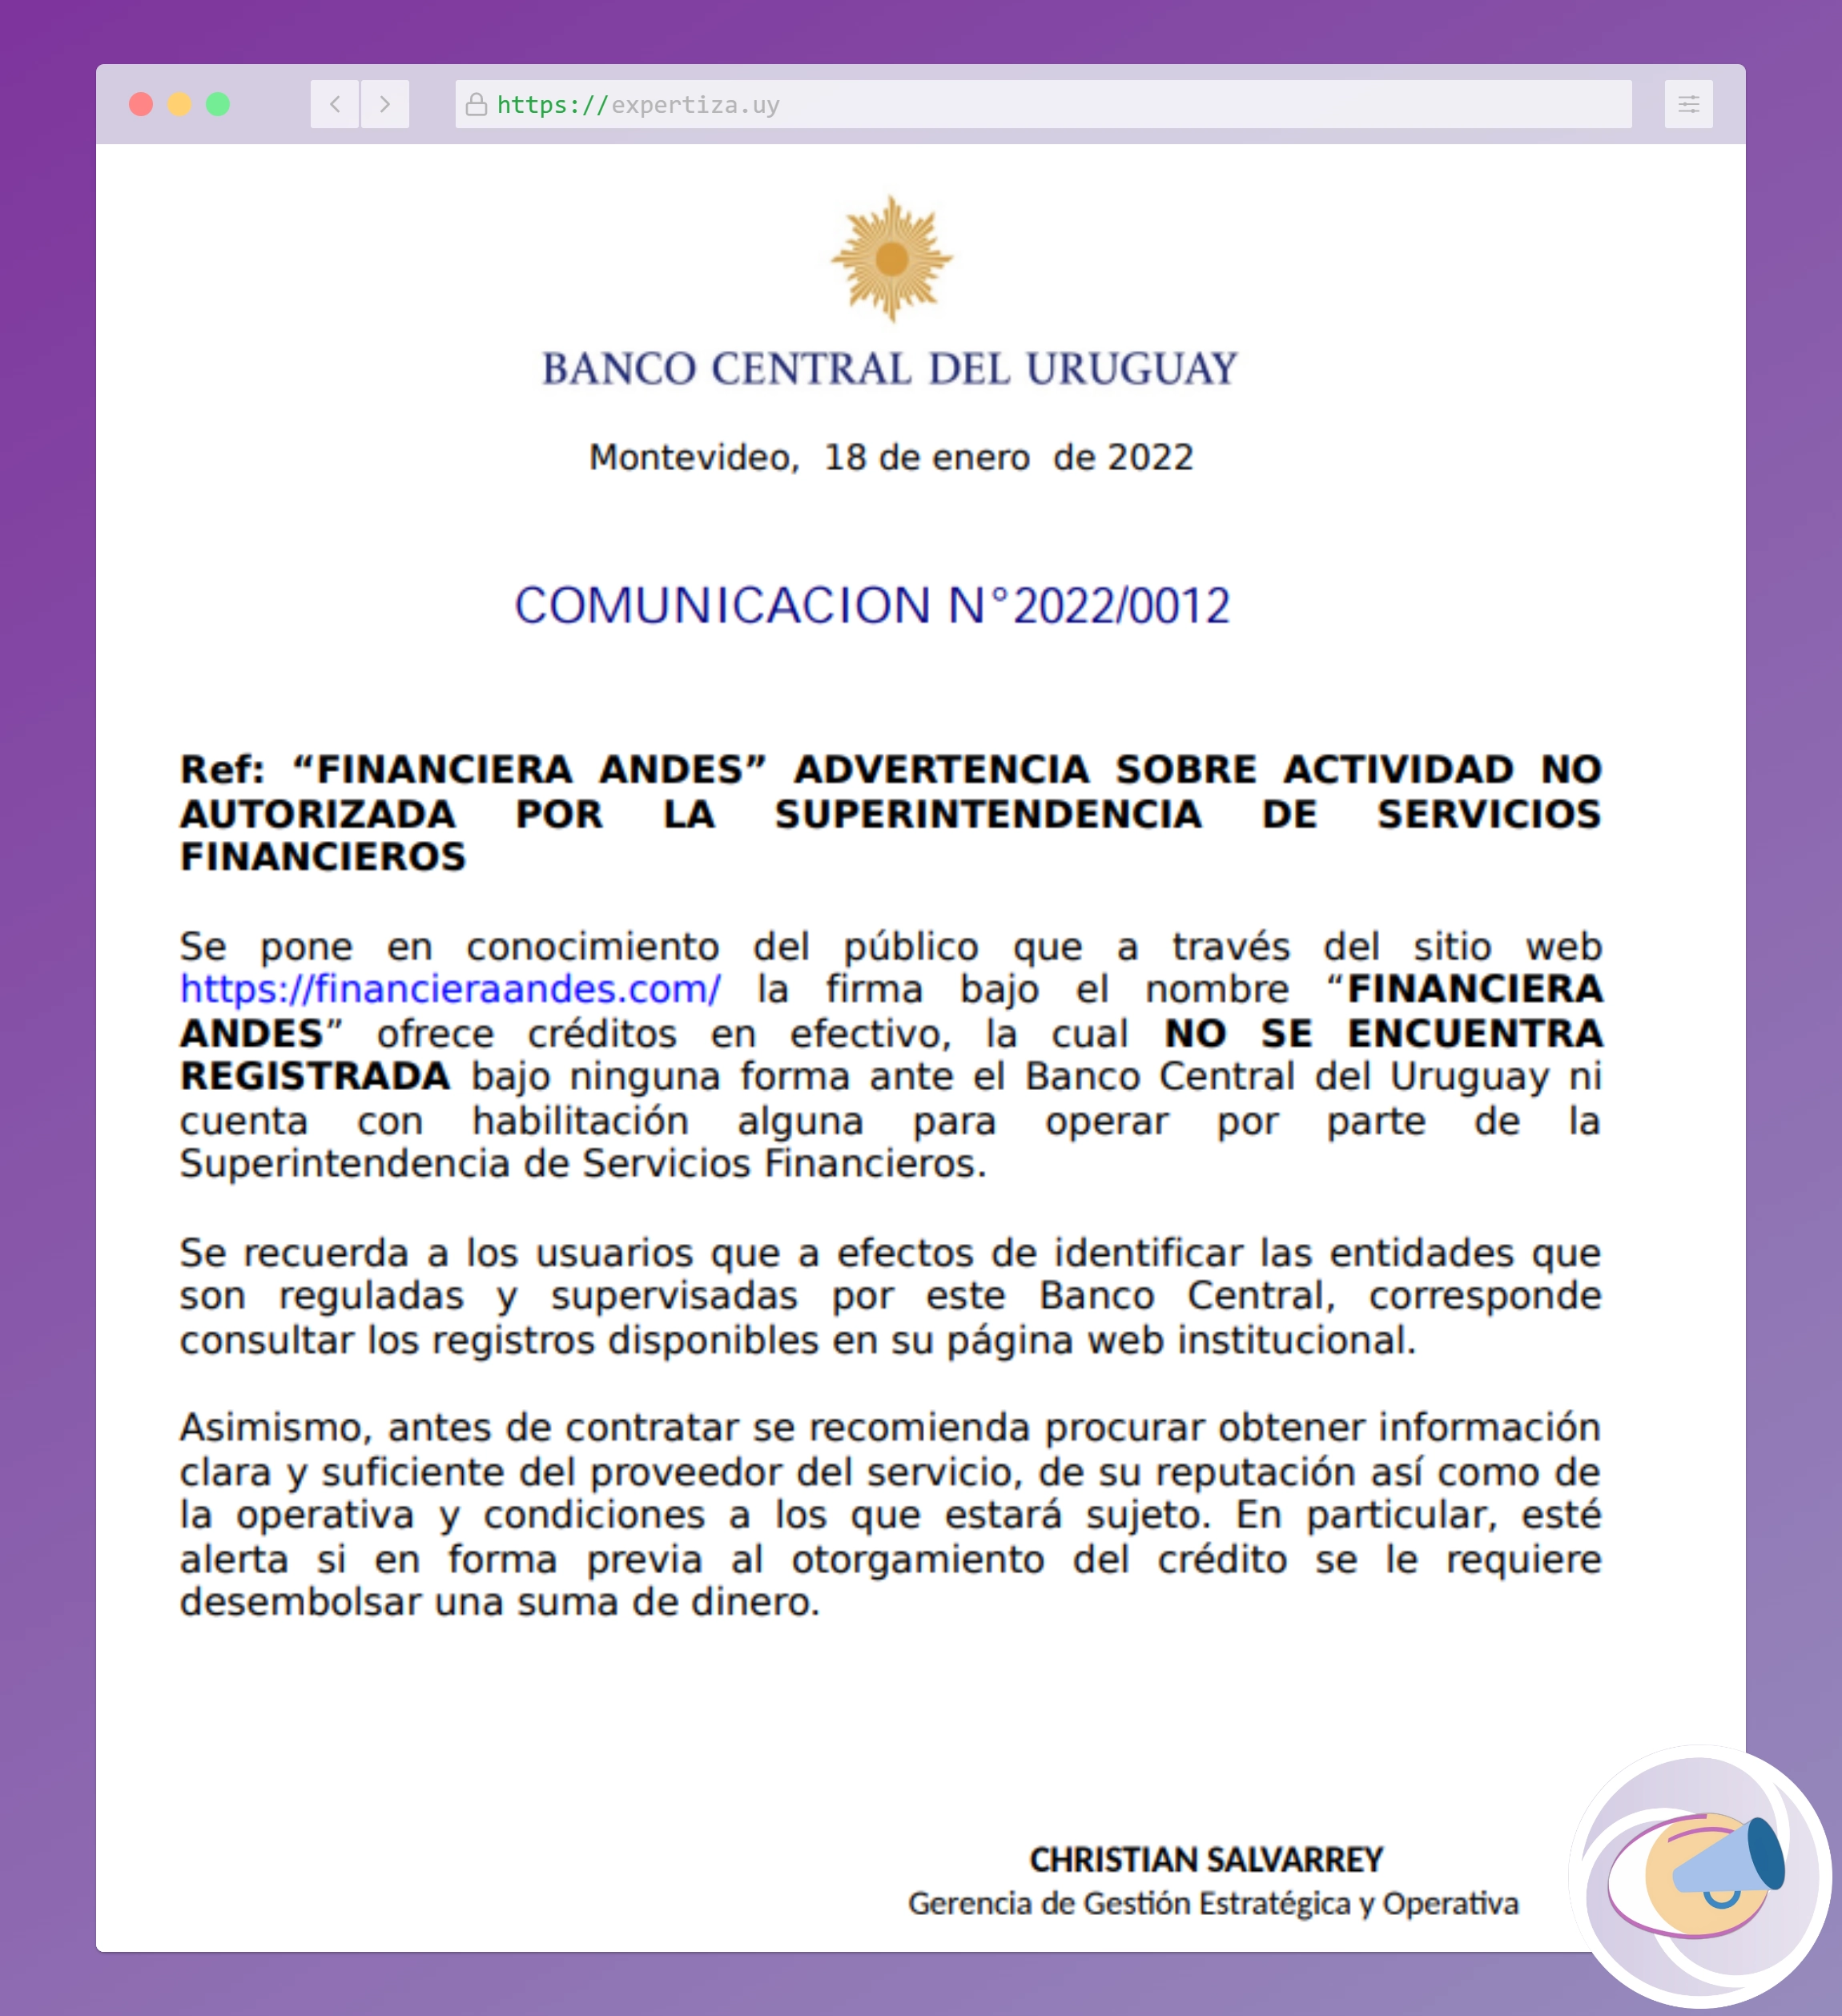 Comunicación del Banco Central del Uruguay sobre actividad no autorizada.